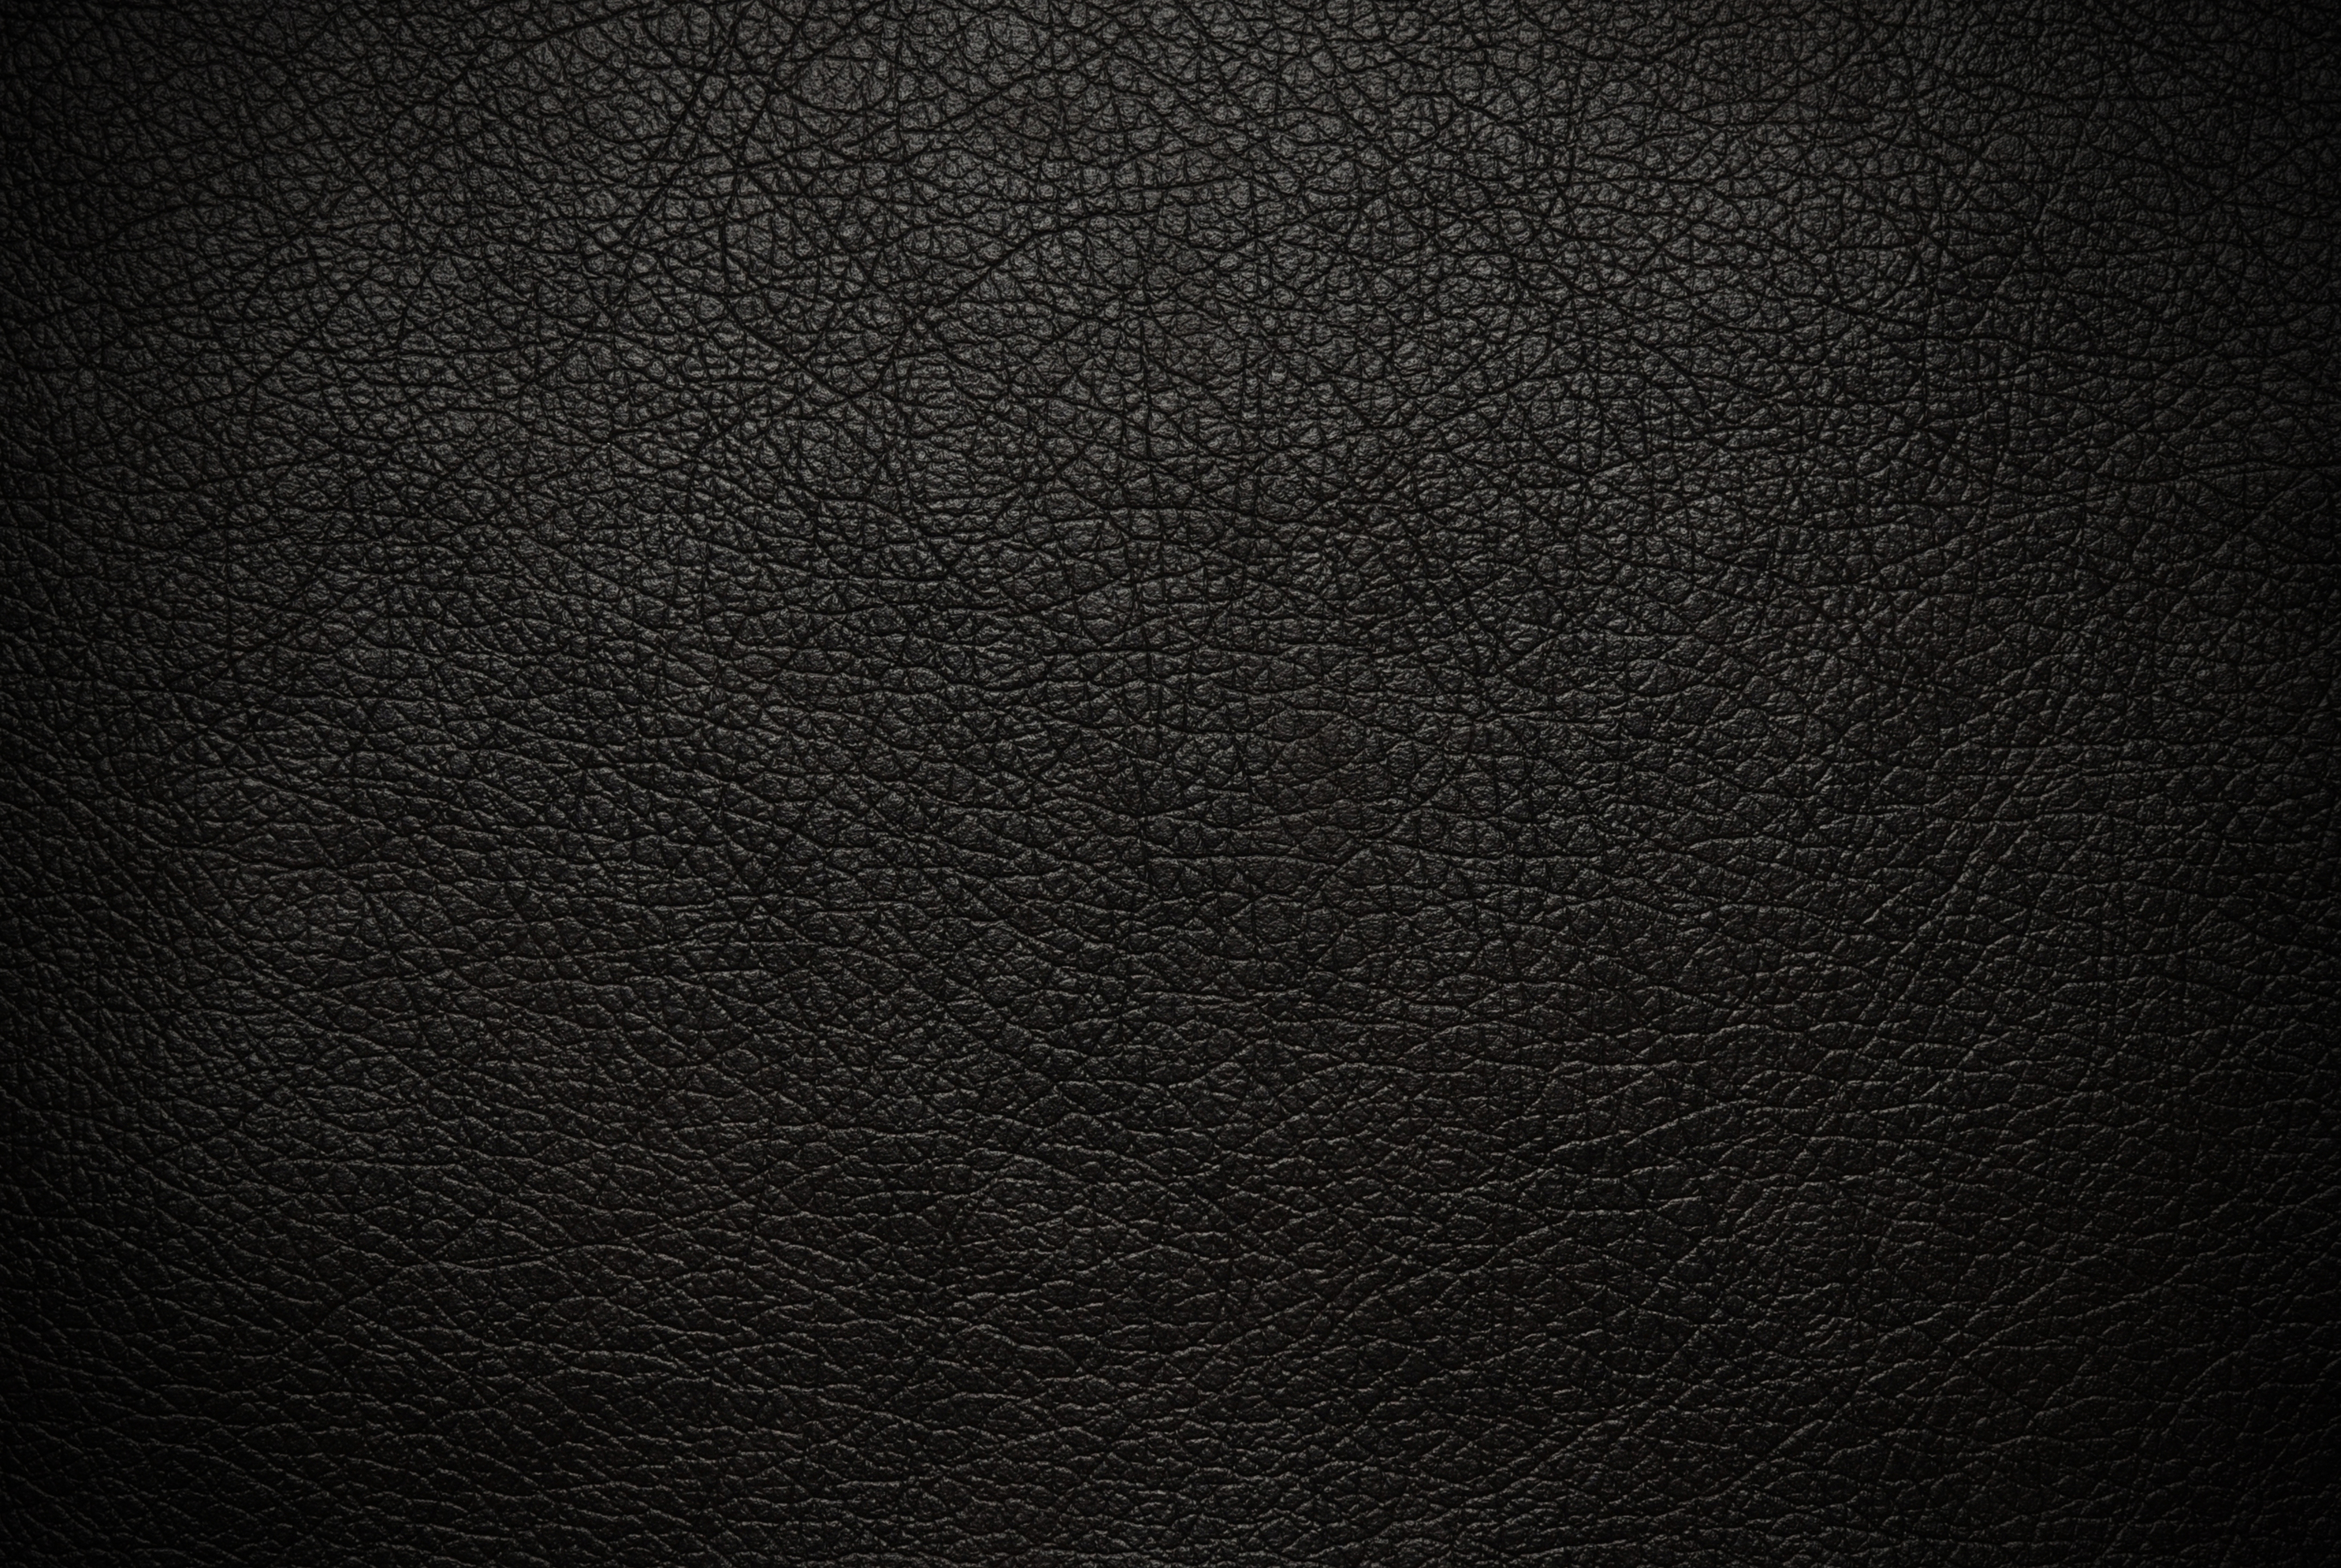 Bộ sưu tập Black background 4k đẹp nhất, tải về miễn phí